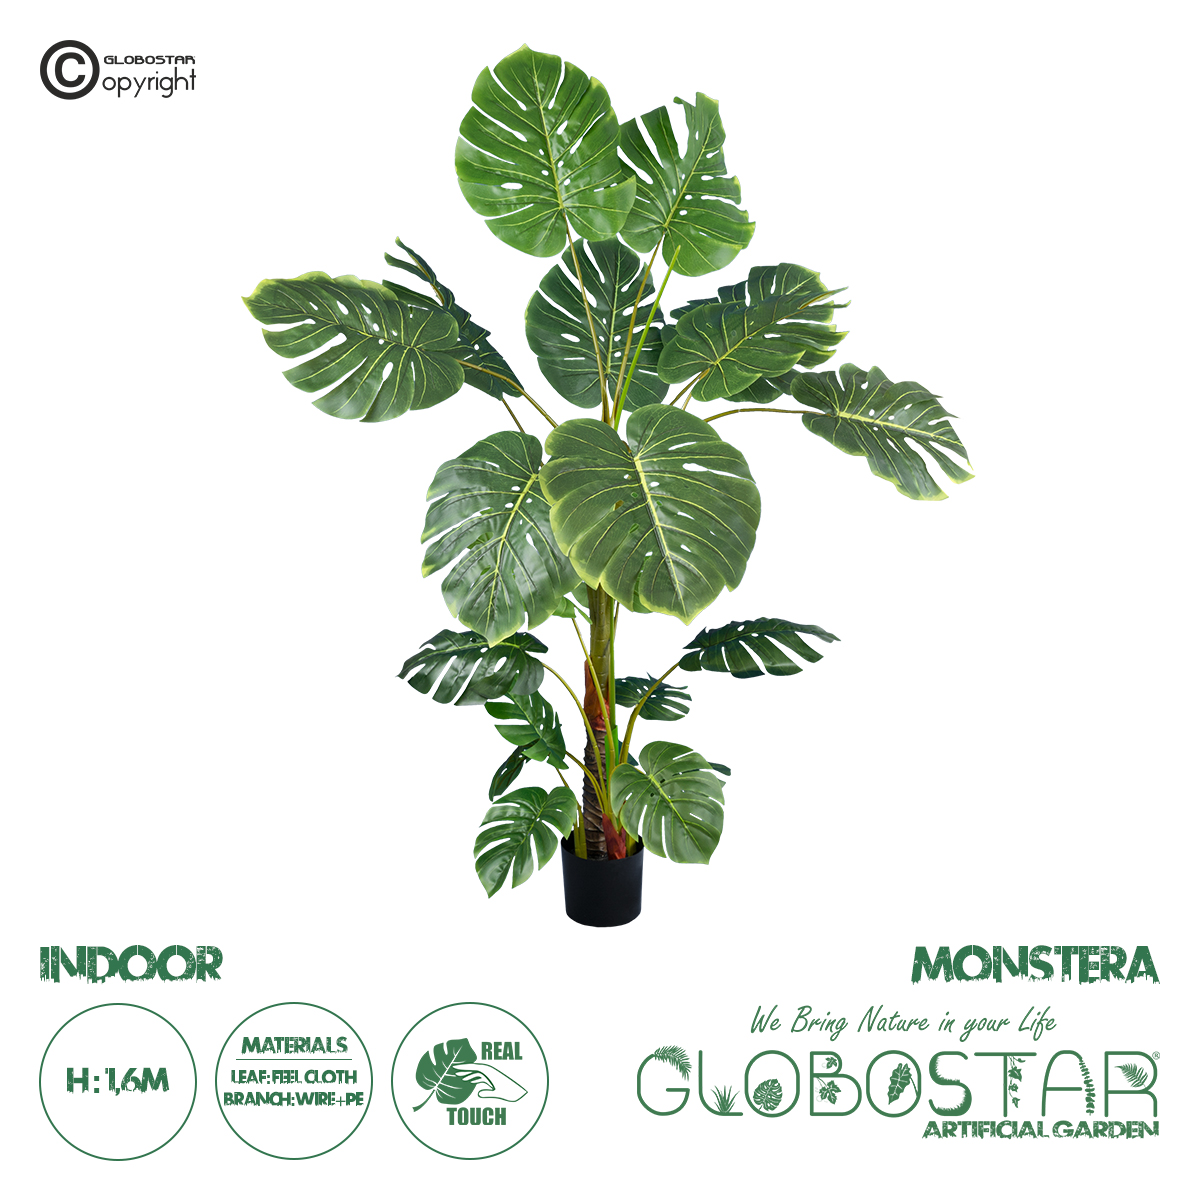 GloboStar® Artificial Garden MONSTERA 20007 Τεχνητό Διακοσμητικό Φυτό Μονστέρα Υ160cm